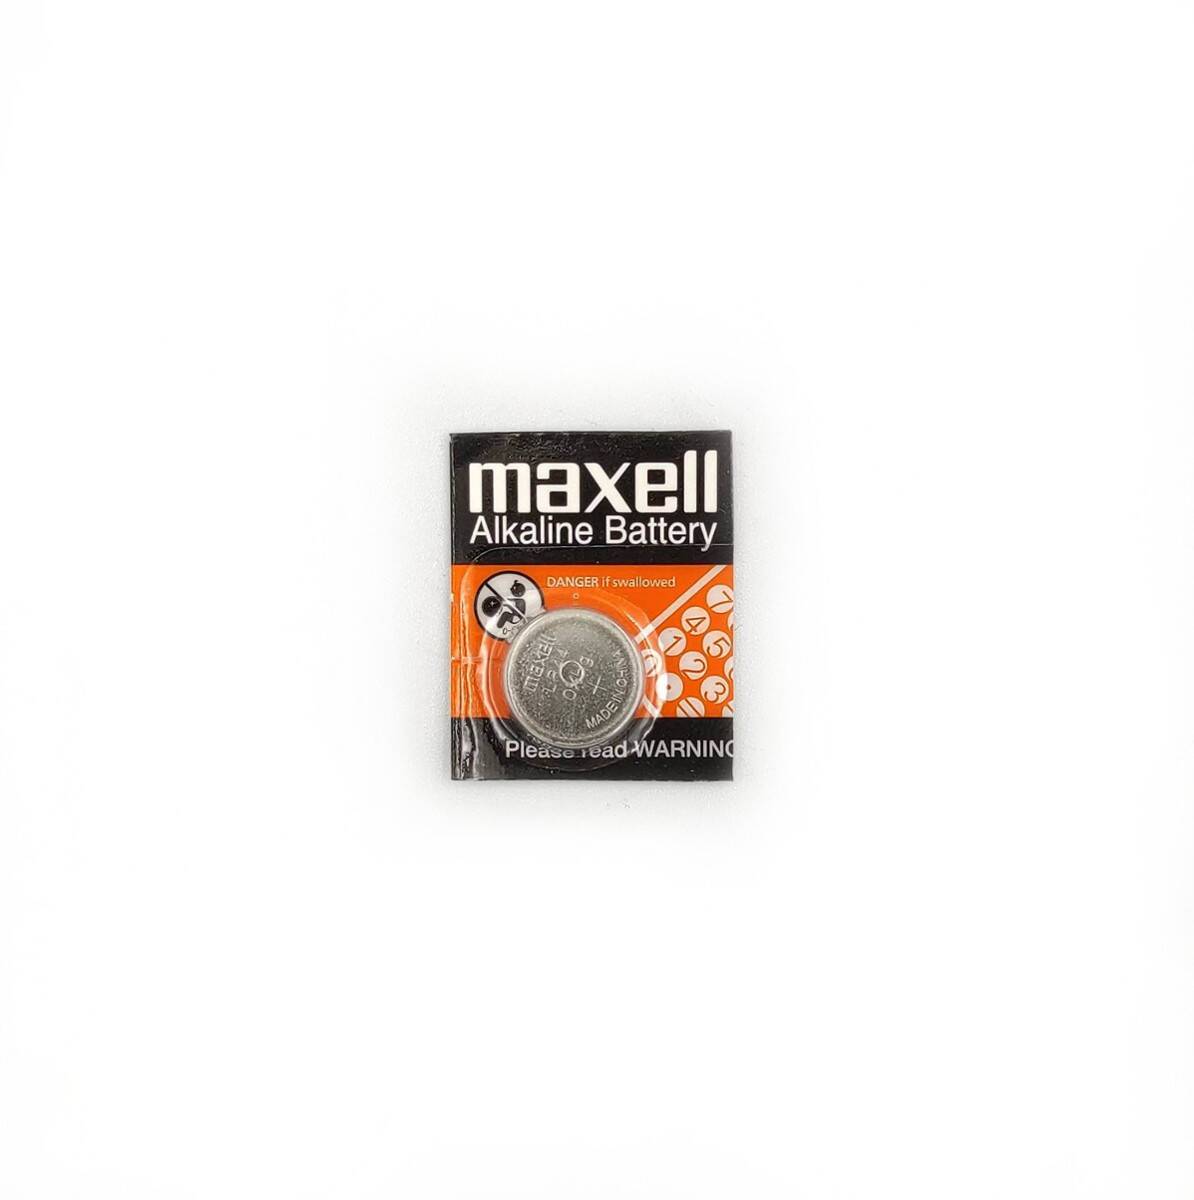 MAXELL bateria alkaliczna LR44 1,5V do przyrządów pomiarowych (zamiennik SR44SW)